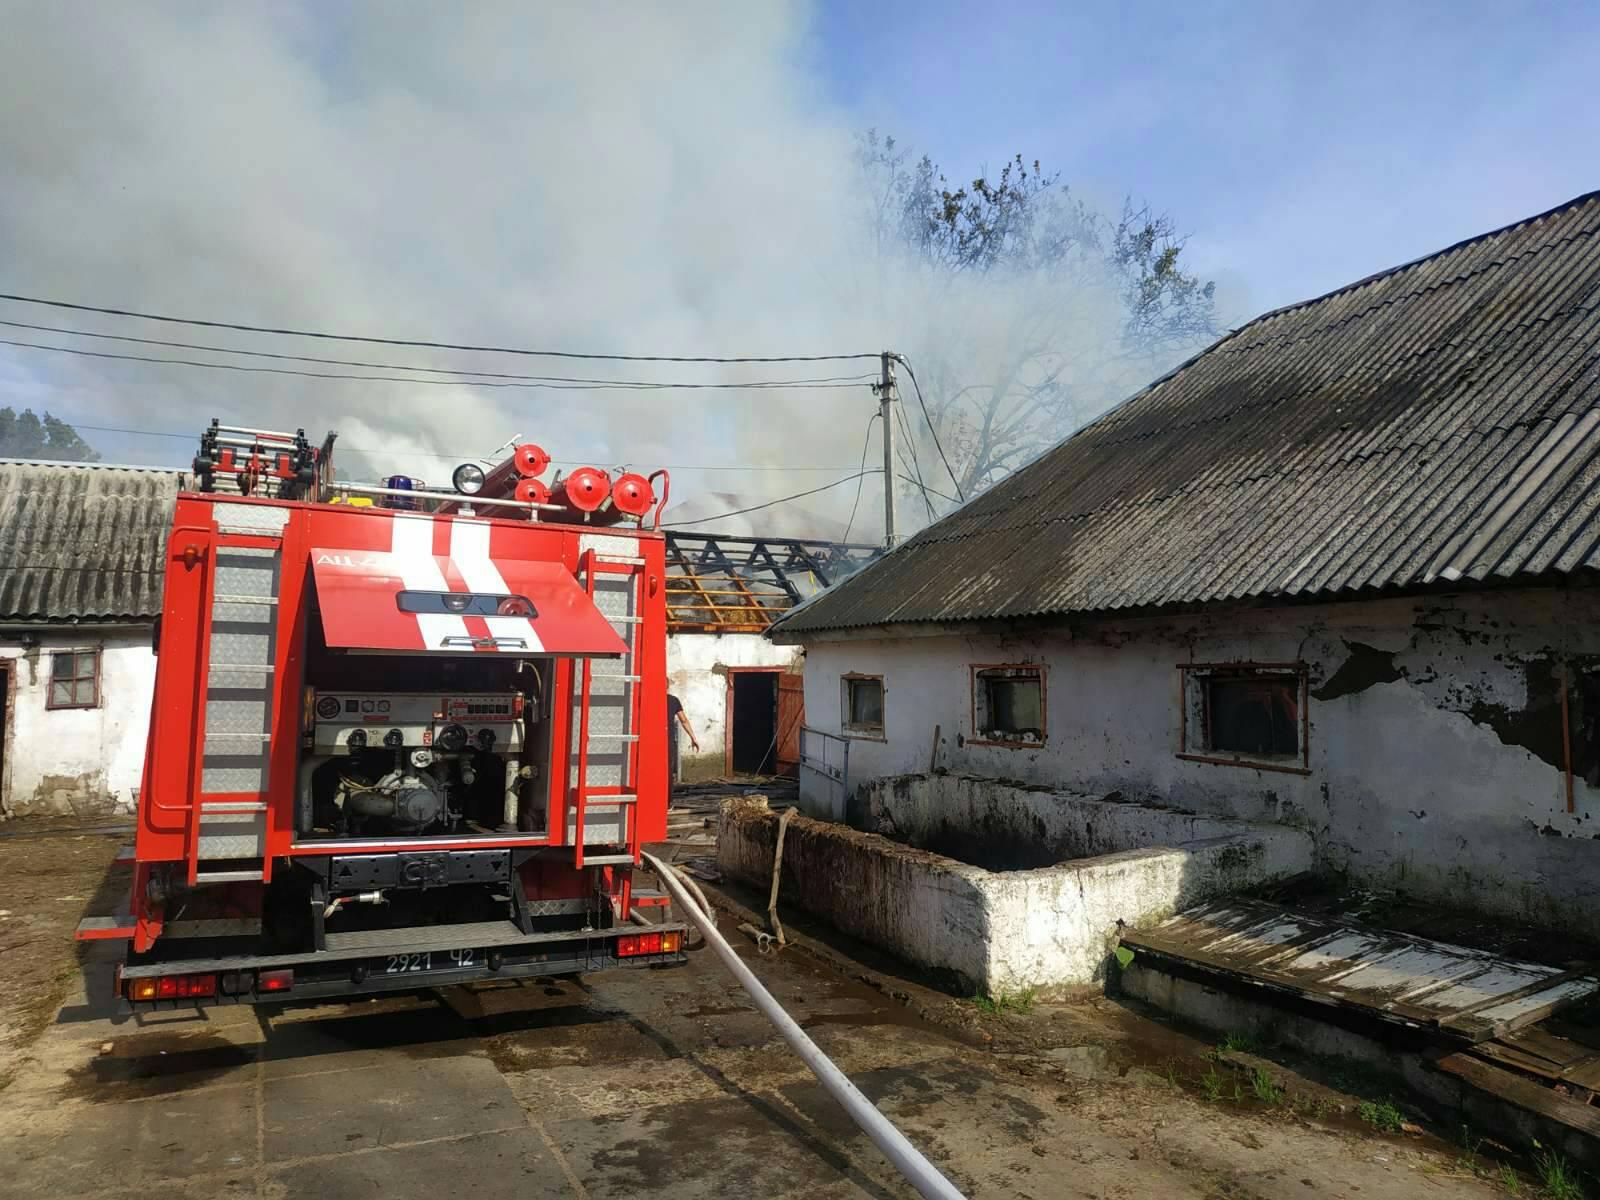 12 жовтня о 12:05 до Служби порятунку надійшло повідомлення про пожежу на горищі господарчої споруди, розташованої на території дитячого будинку-інтернату у Виноградові. Подія трапилася на Станційній.